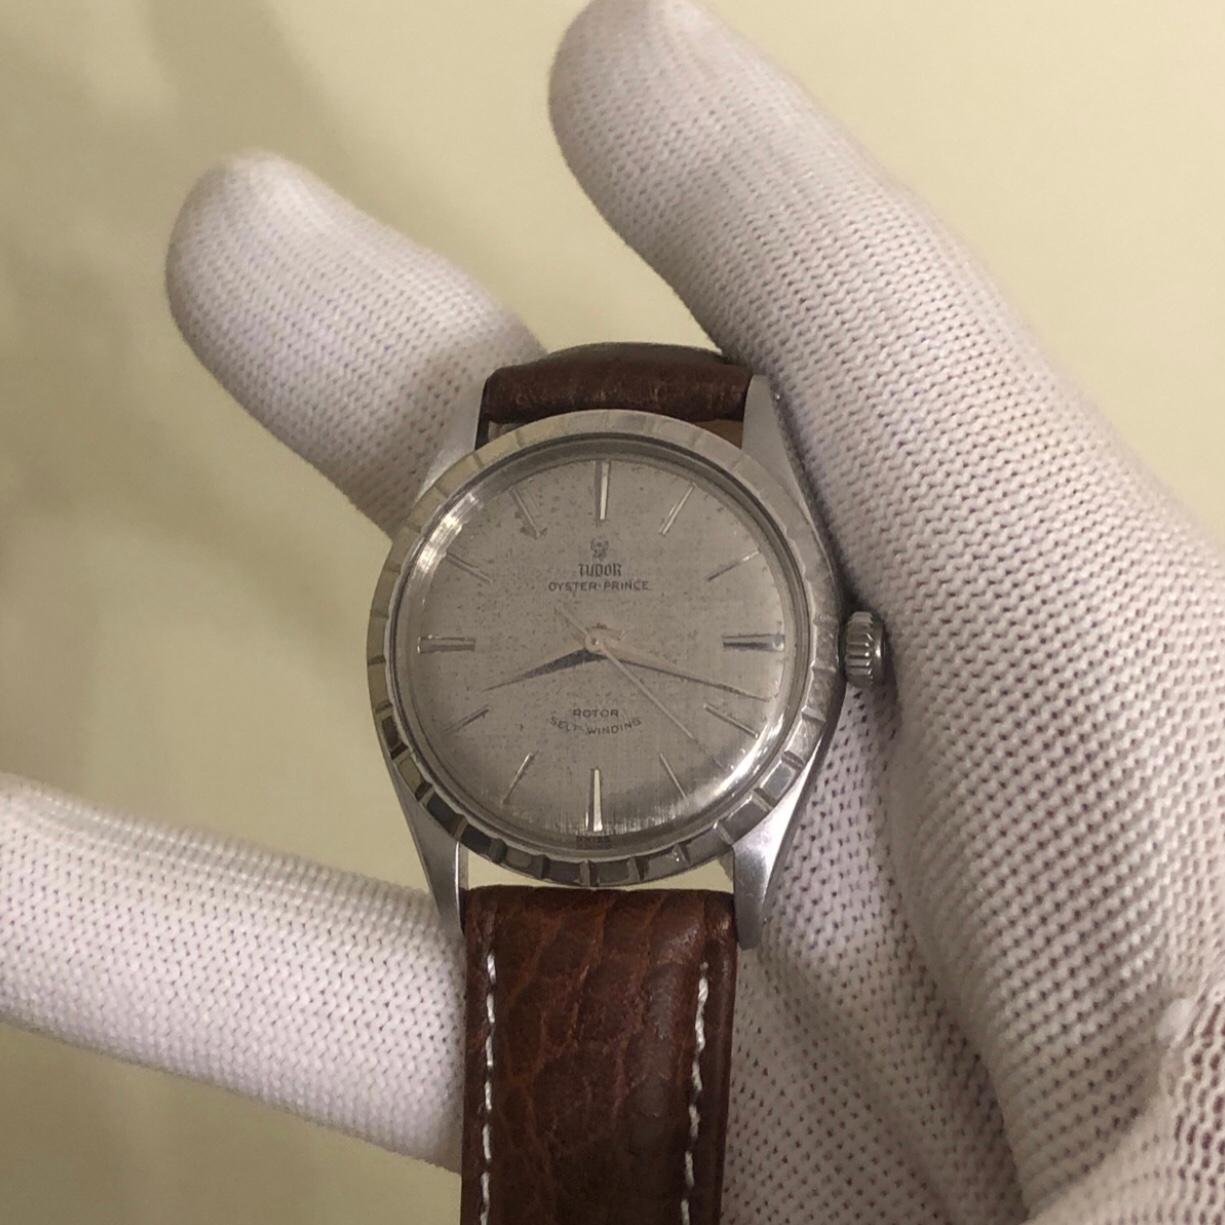 Rolex Tudor Oyster Prince 34mm Edelstahl Vintage Uhr mit Broschüre Papiere.

Dieser echte Rolex Tudor Zeitmesser verfügt über eine 34mm Edelstahl-Lünette und Rolex Doppelverschluss Krone. 34mm Tudor Oyster-Prince Uhr ist ein Vintage 7965 Modell mit